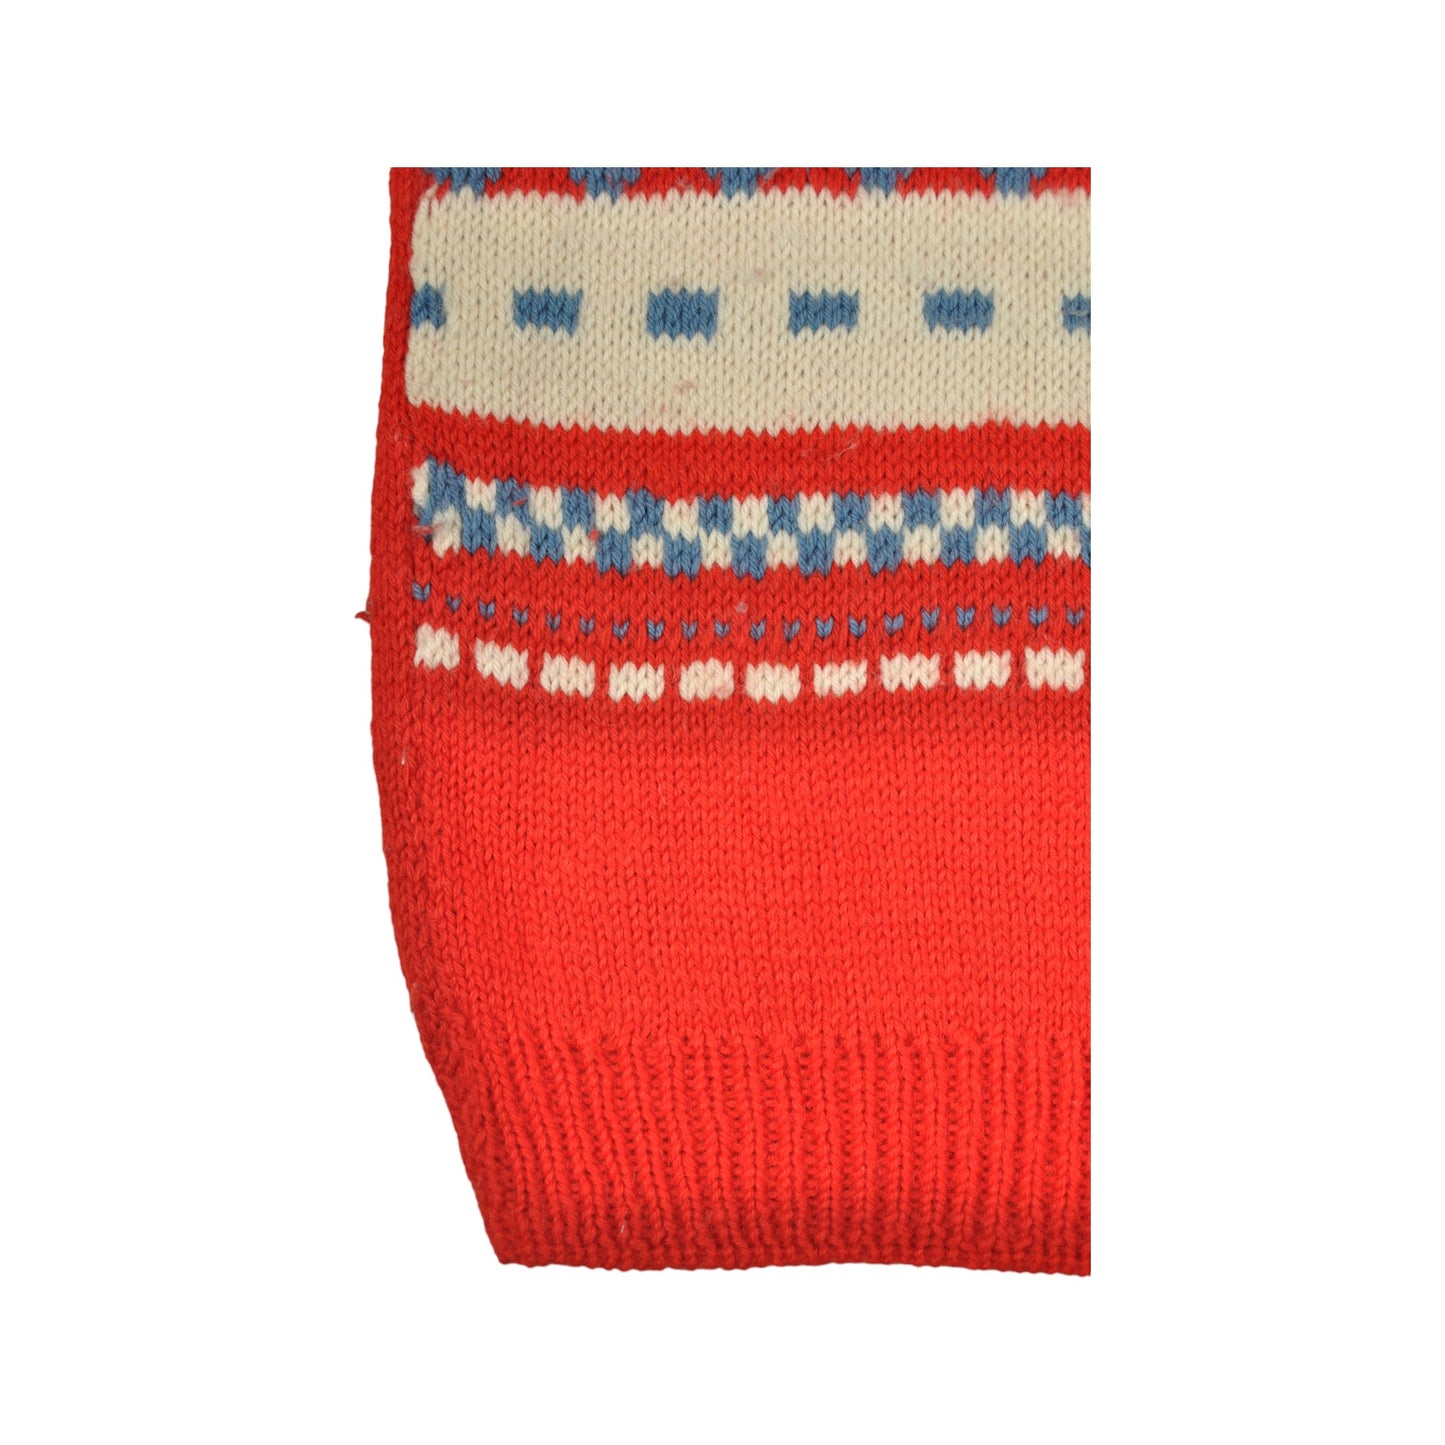 Vintage Handmade Knitwear Sweater Vest Red Ladies XS